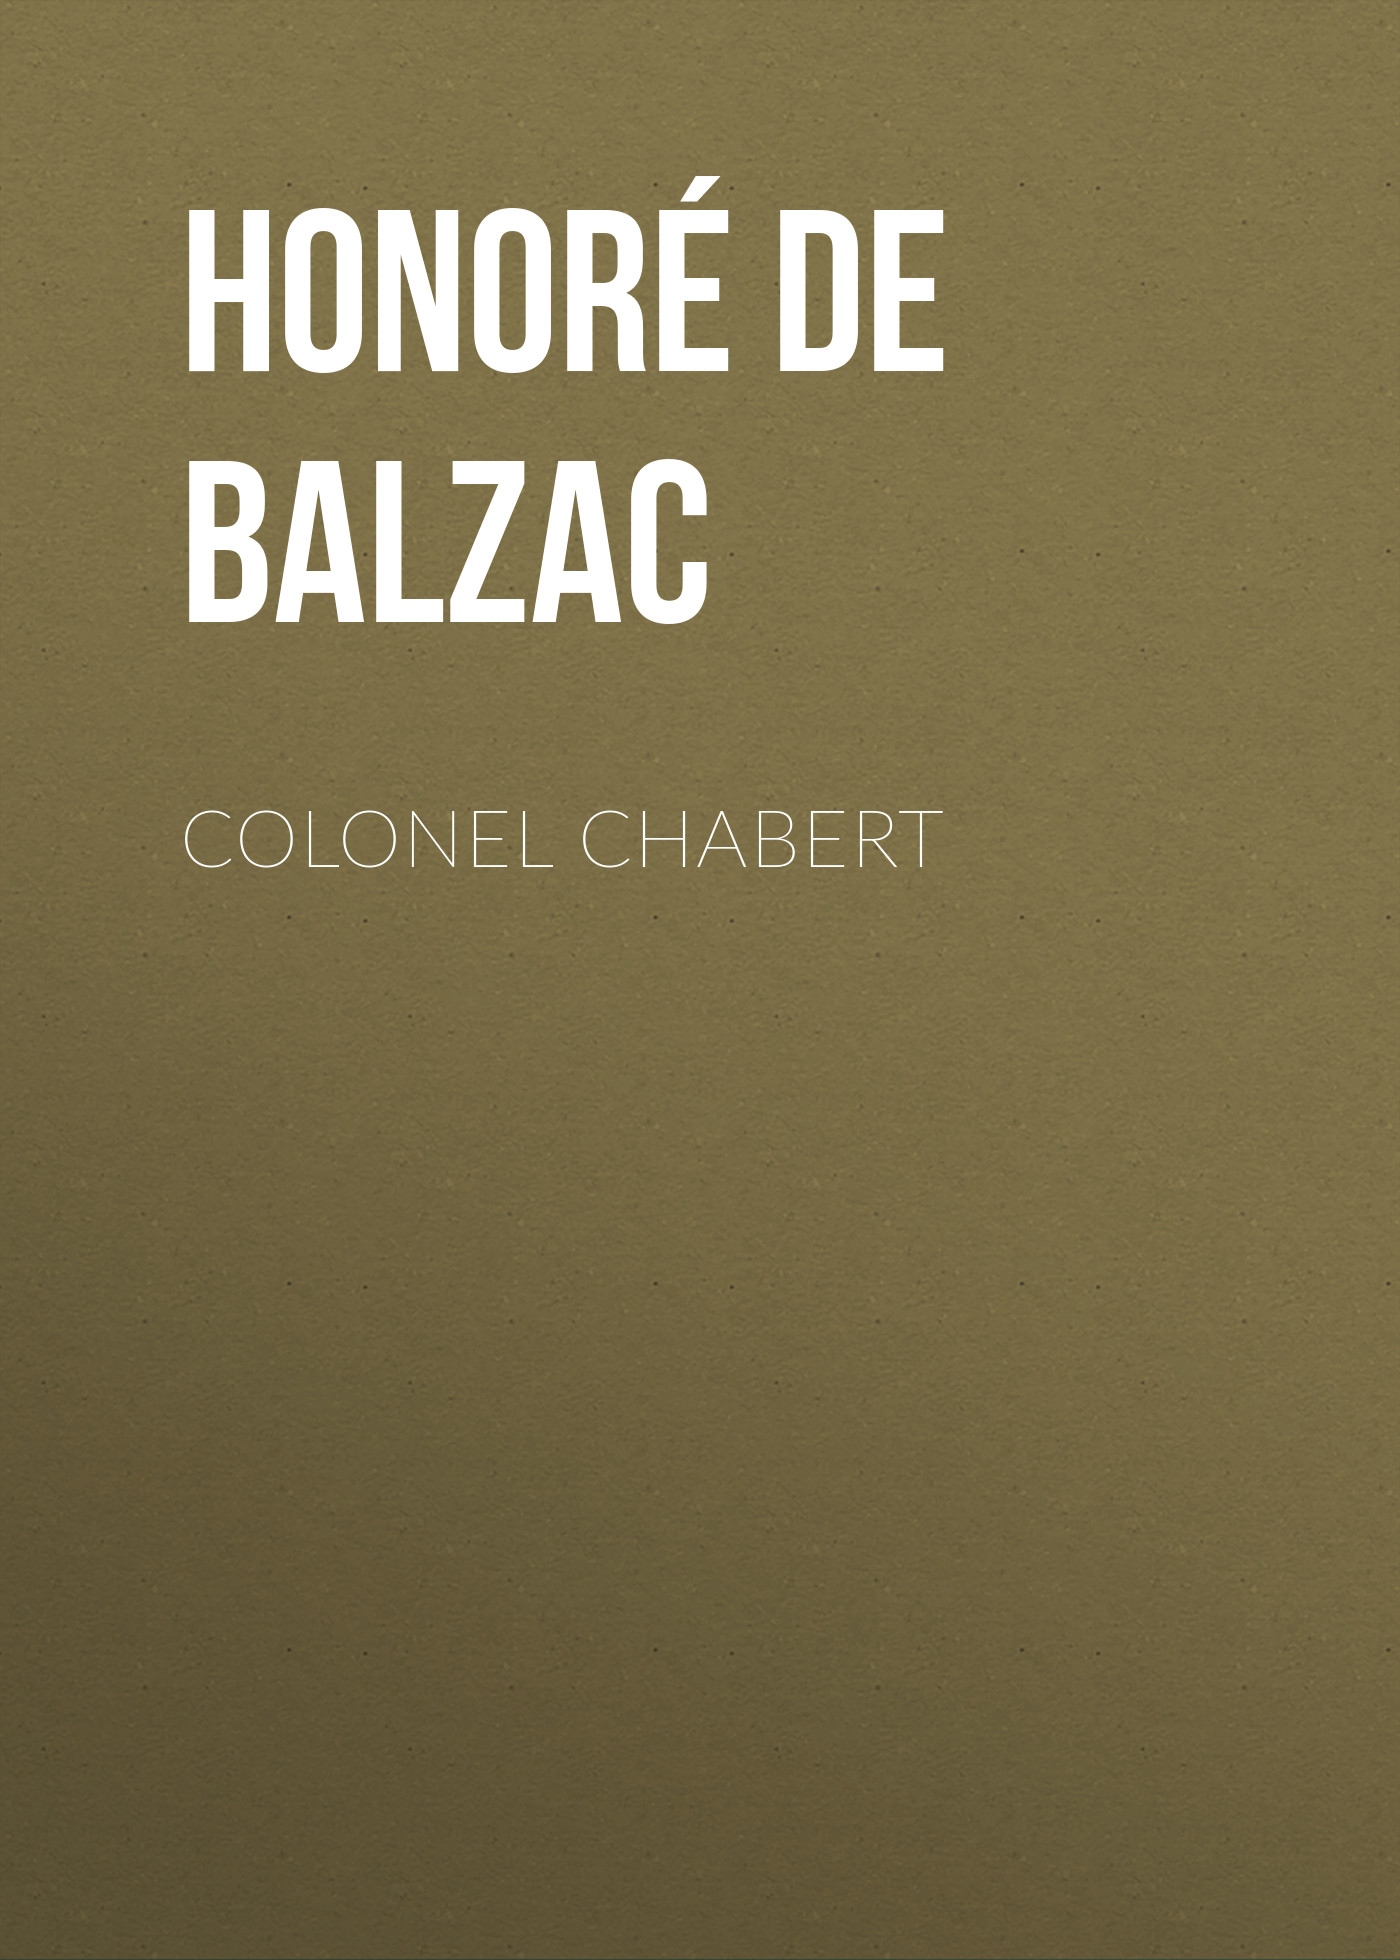 Книга Colonel Chabert из серии , созданная Honoré Balzac, может относится к жанру Литература 19 века, Зарубежная старинная литература, Зарубежная классика. Стоимость электронной книги Colonel Chabert с идентификатором 25020611 составляет 0 руб.